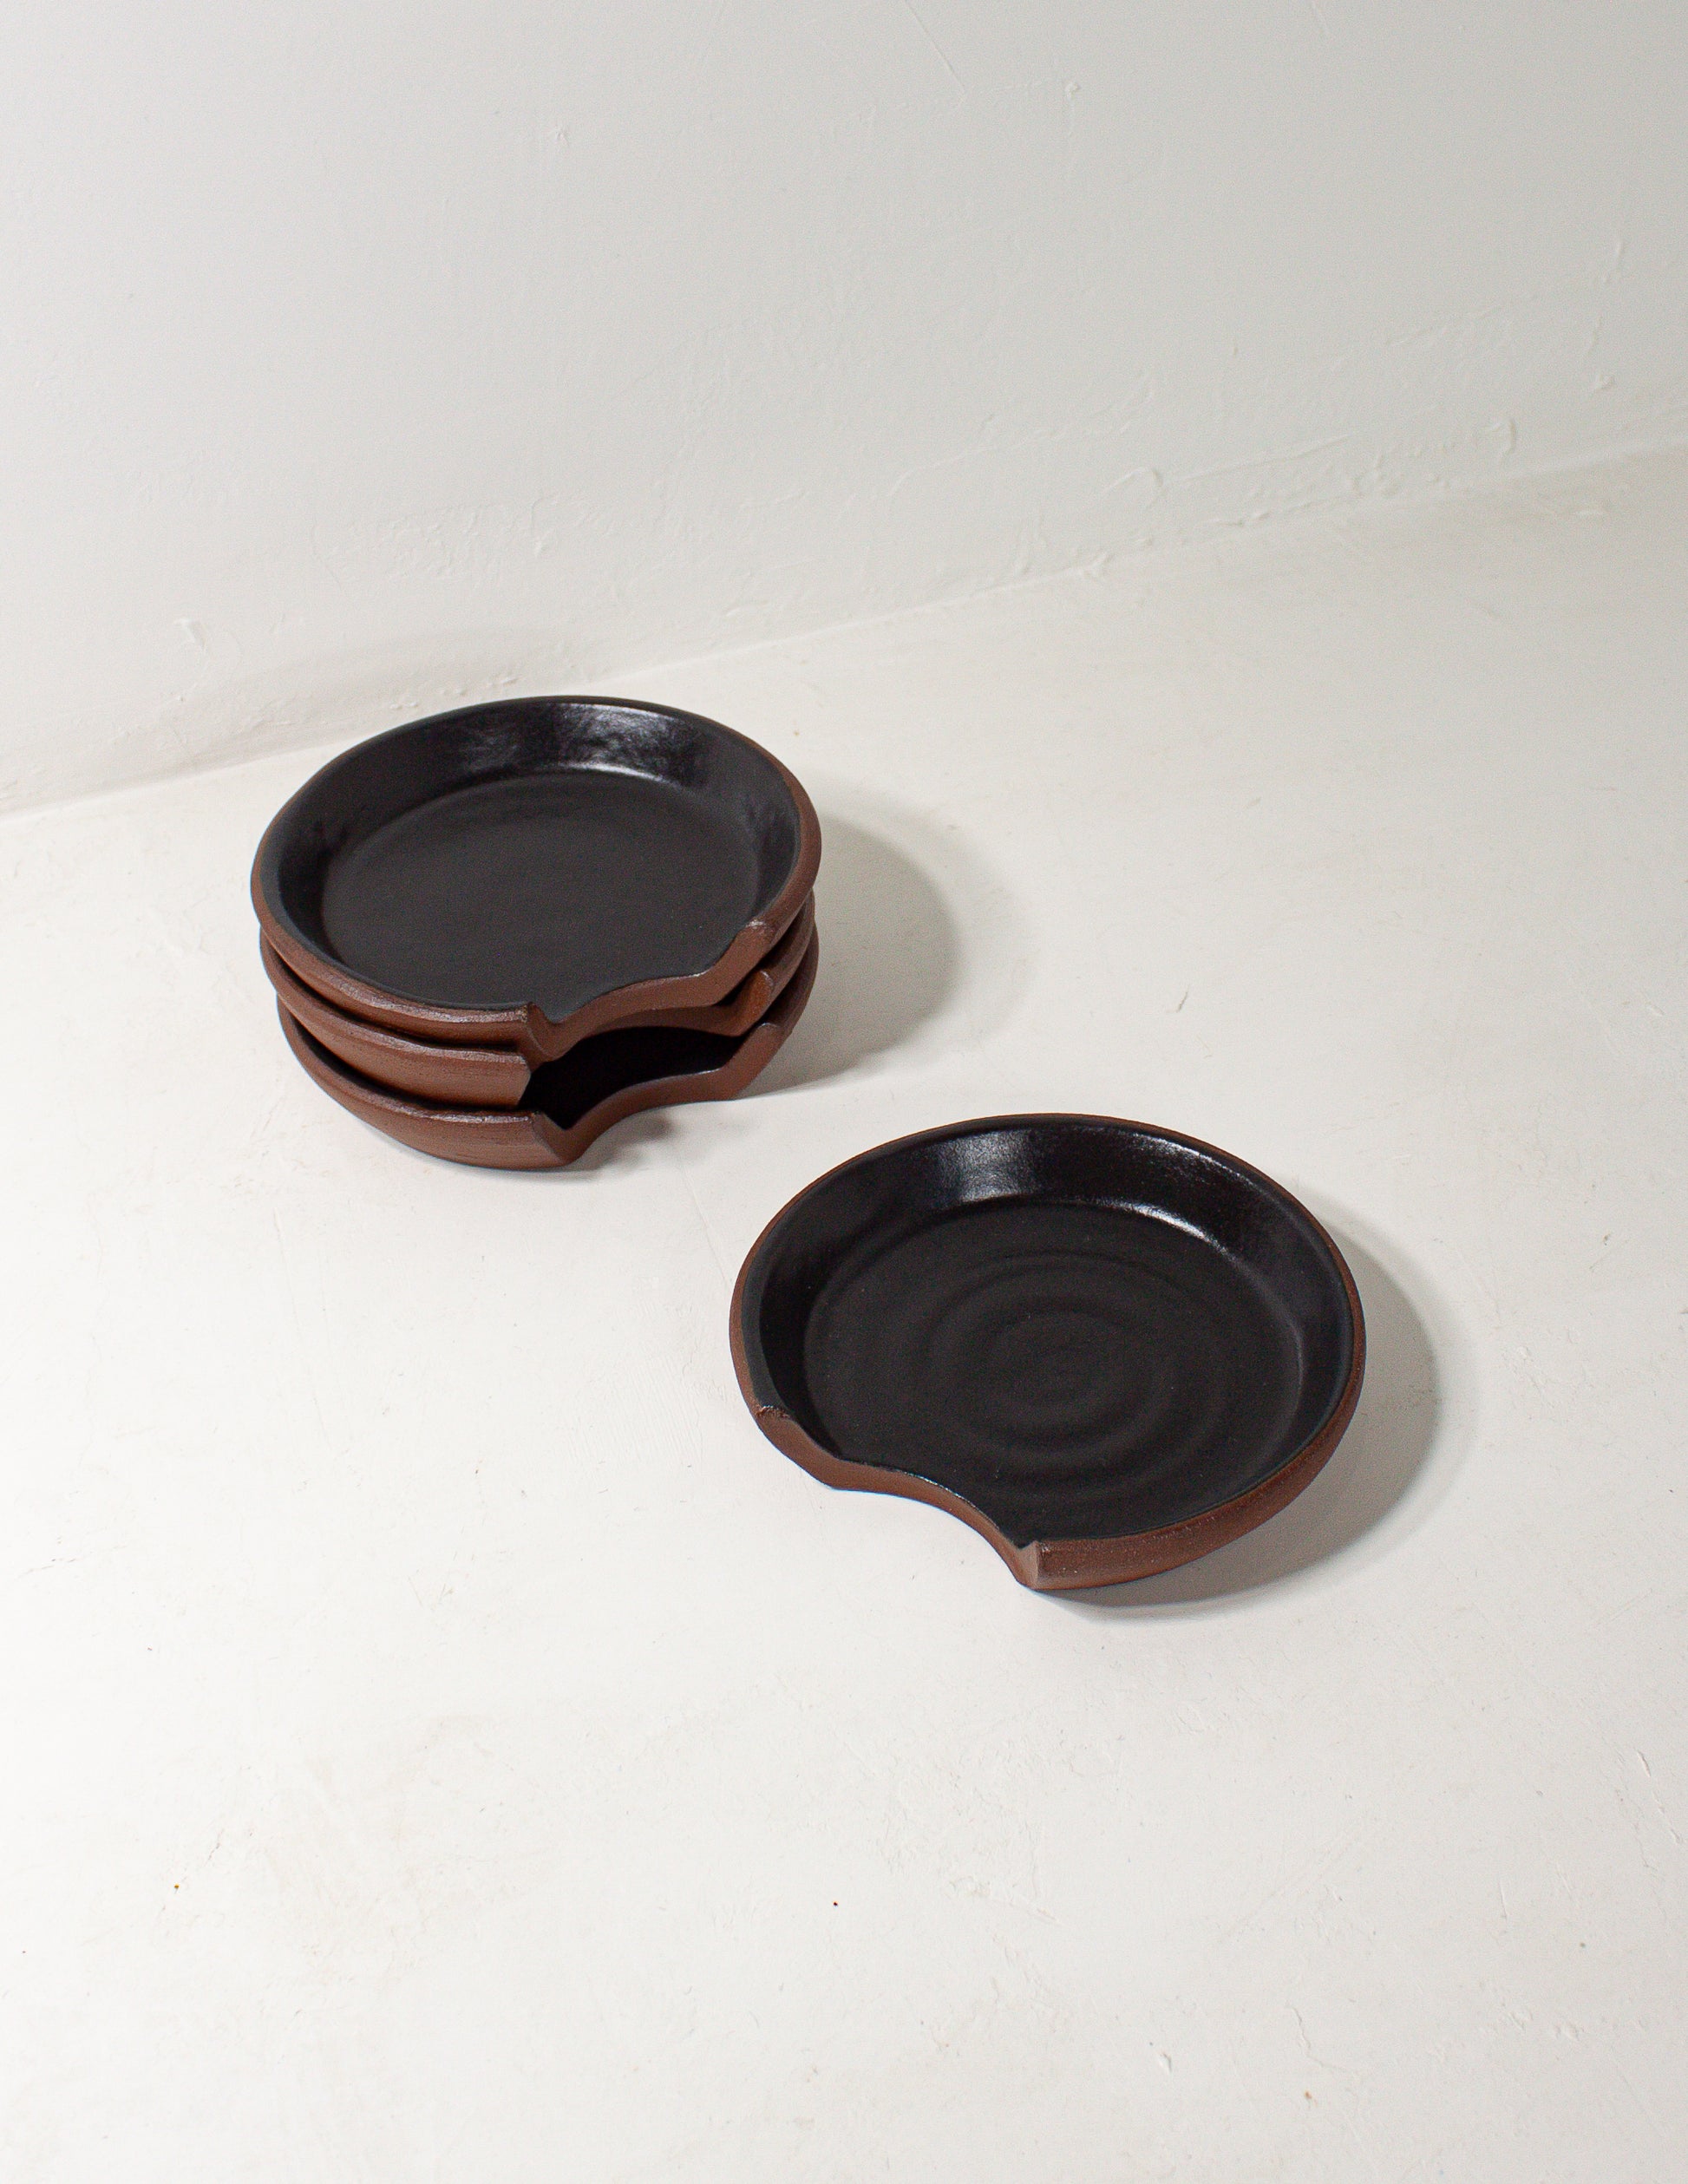 handmade ceramic spoon rest in black glaze